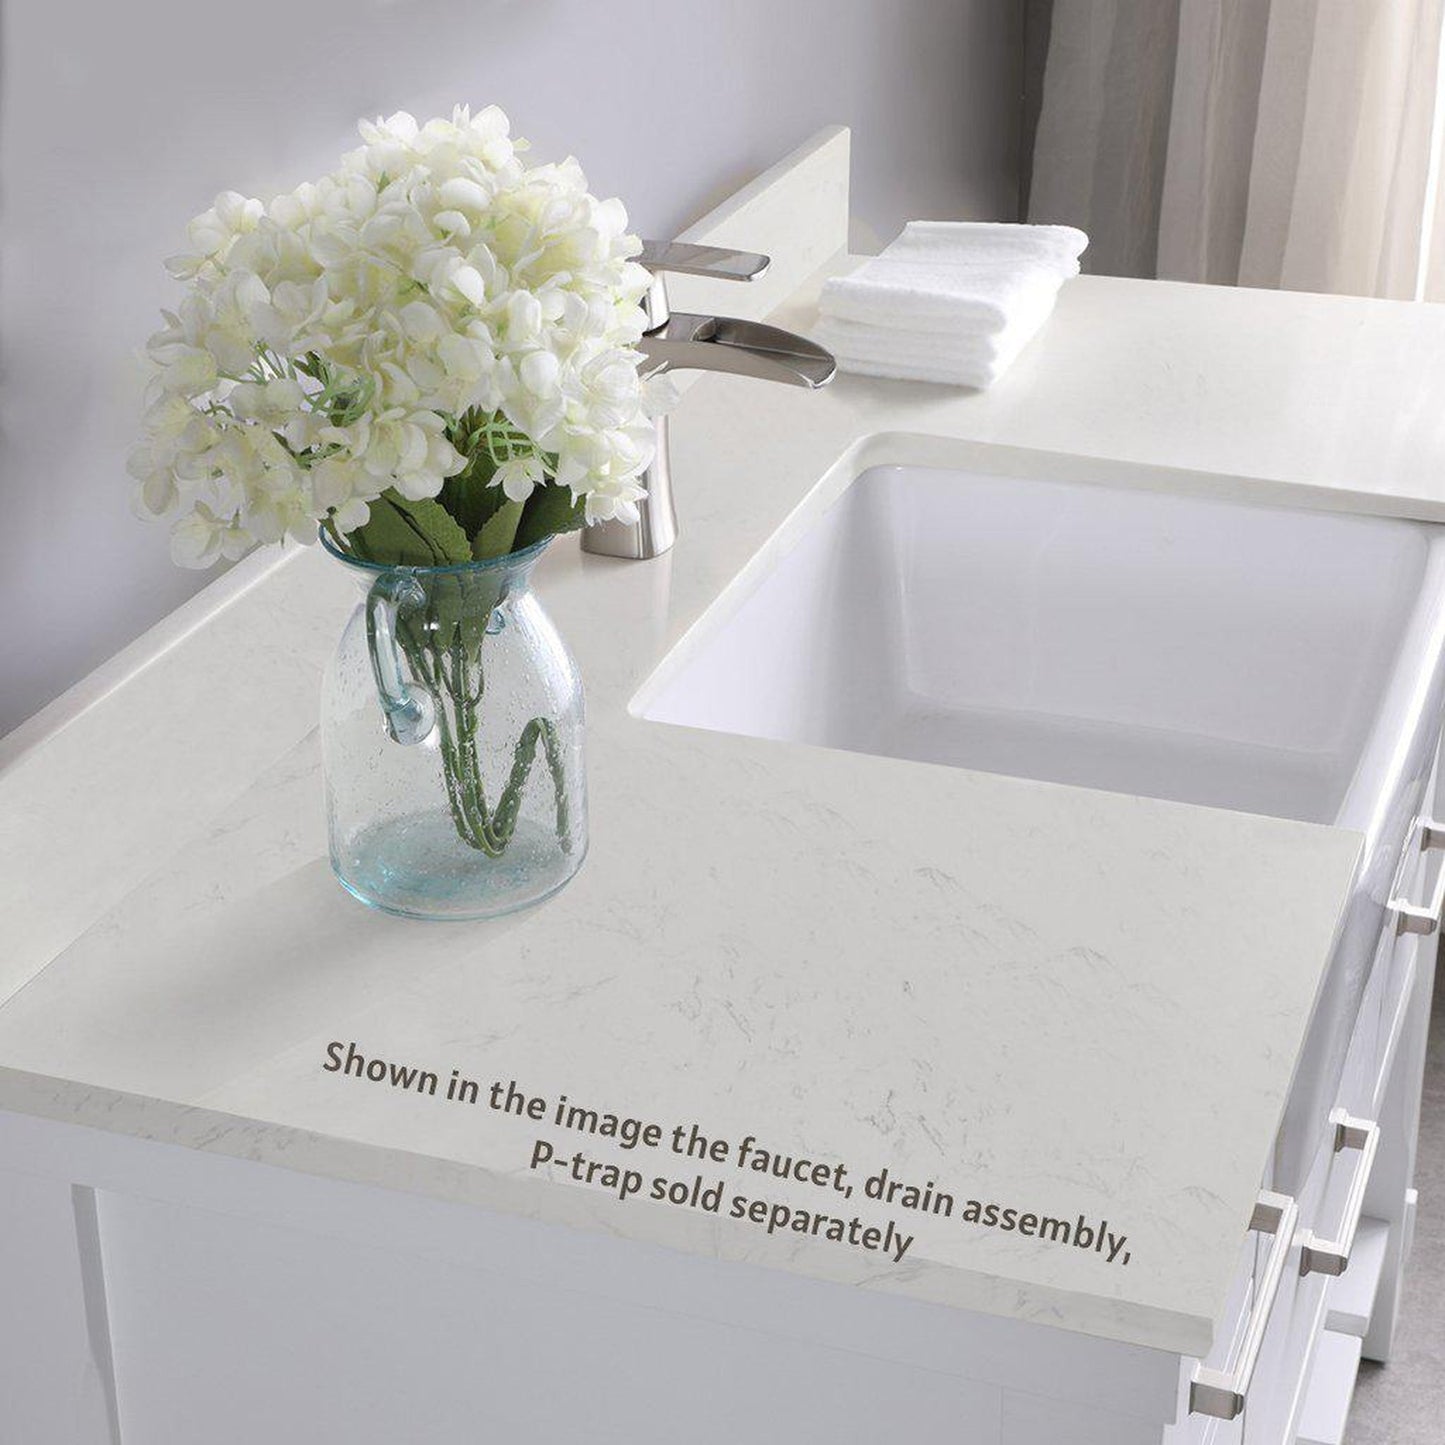 Altair Georgia 48" Single White Freestanding Bathroom Vanity Set With Aosta White Composite Stone Top, Rectangular Farmhouse Sink, Overflow, and Backsplash